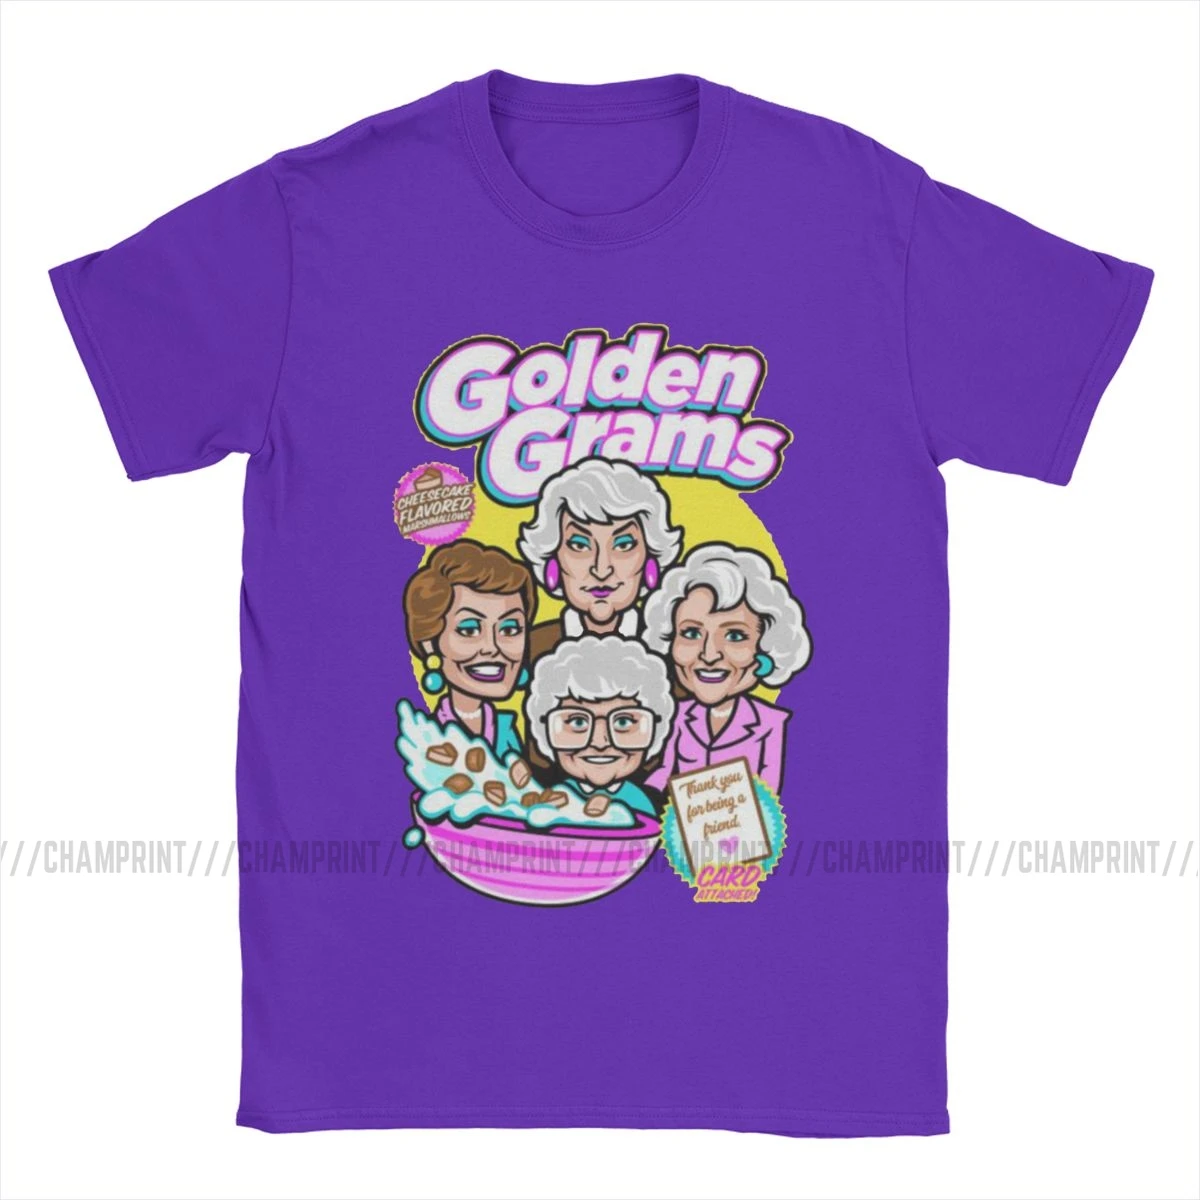 Мужская футболка с золотыми граммами хлопковая одежда для девочек изображением